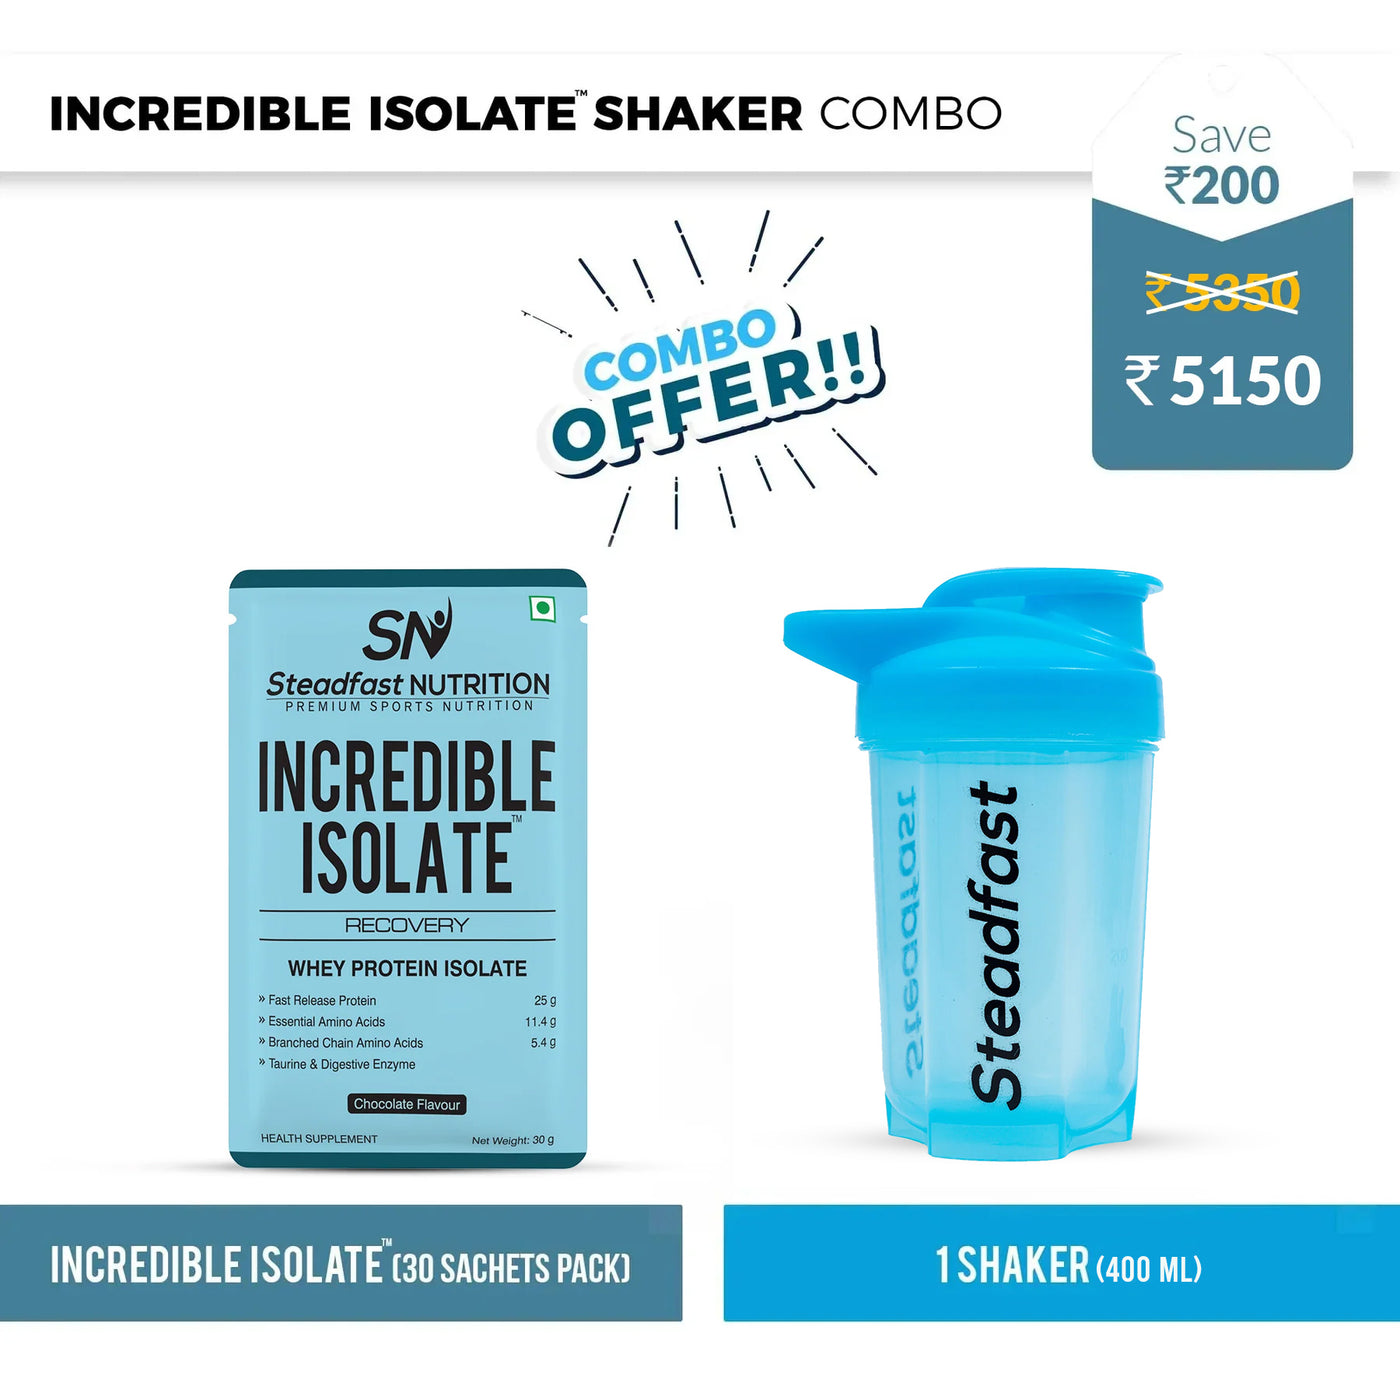 Incredible Isolate Shaker Combo